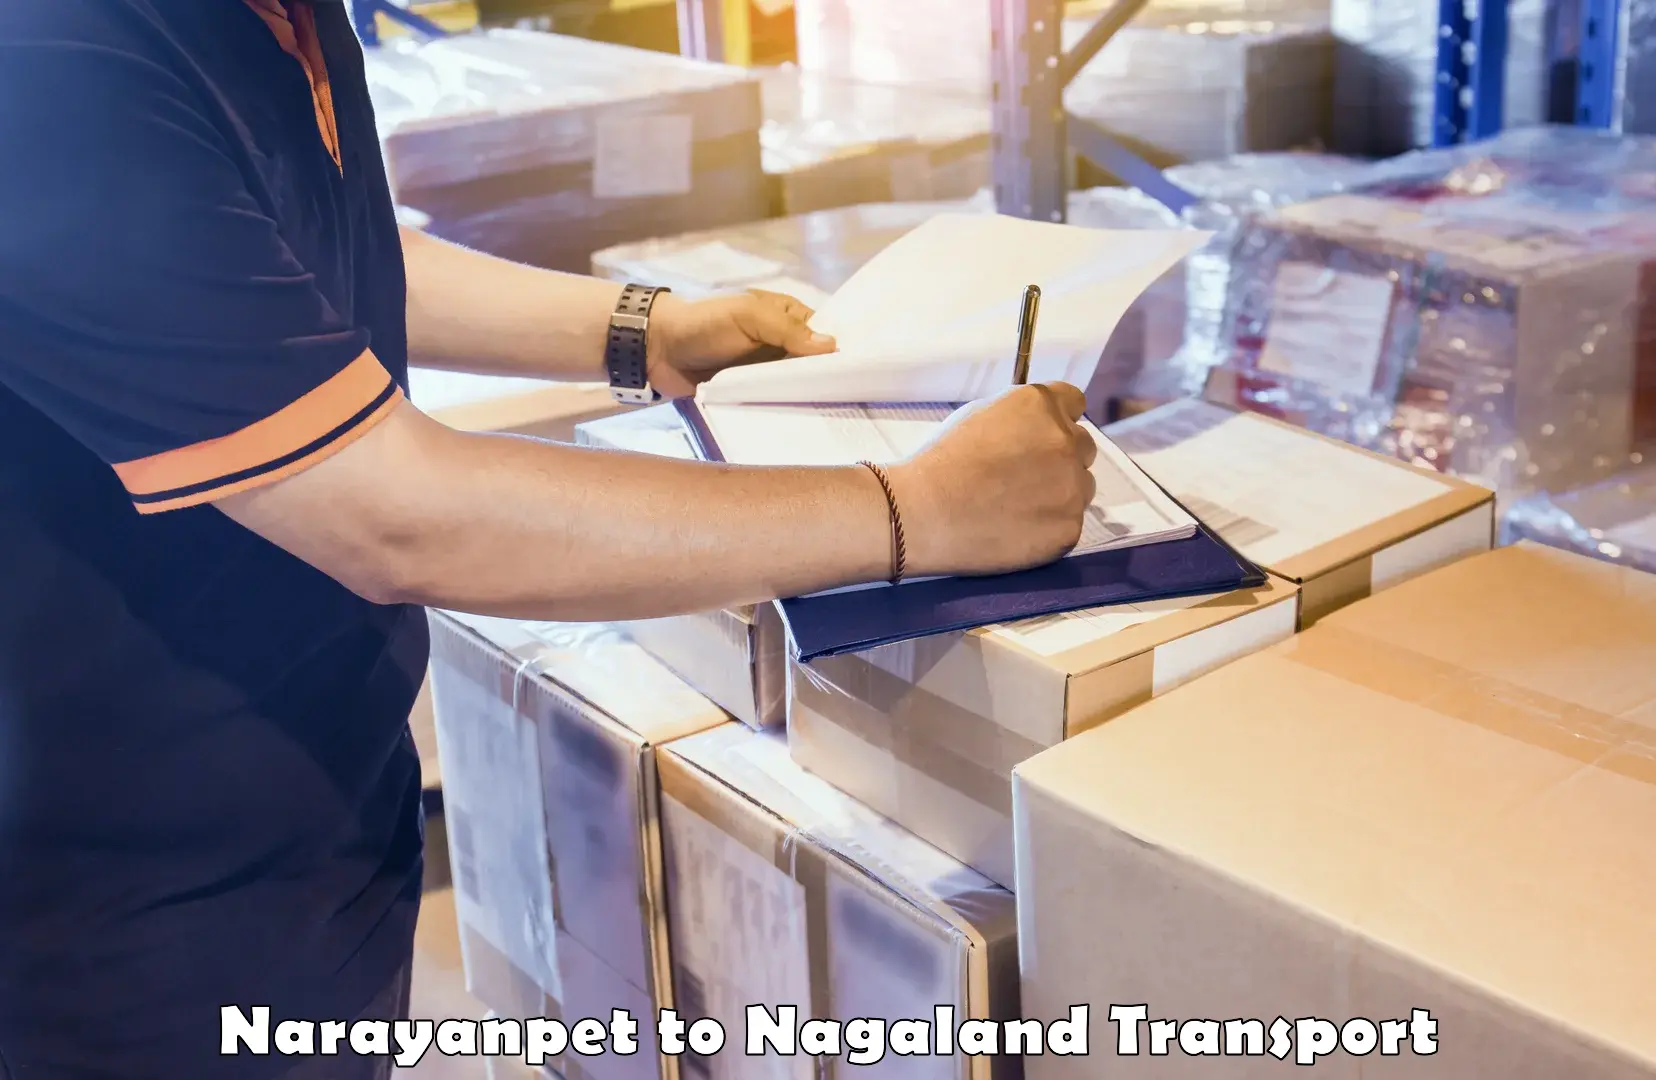 Nearest transport service Narayanpet to Tuensang